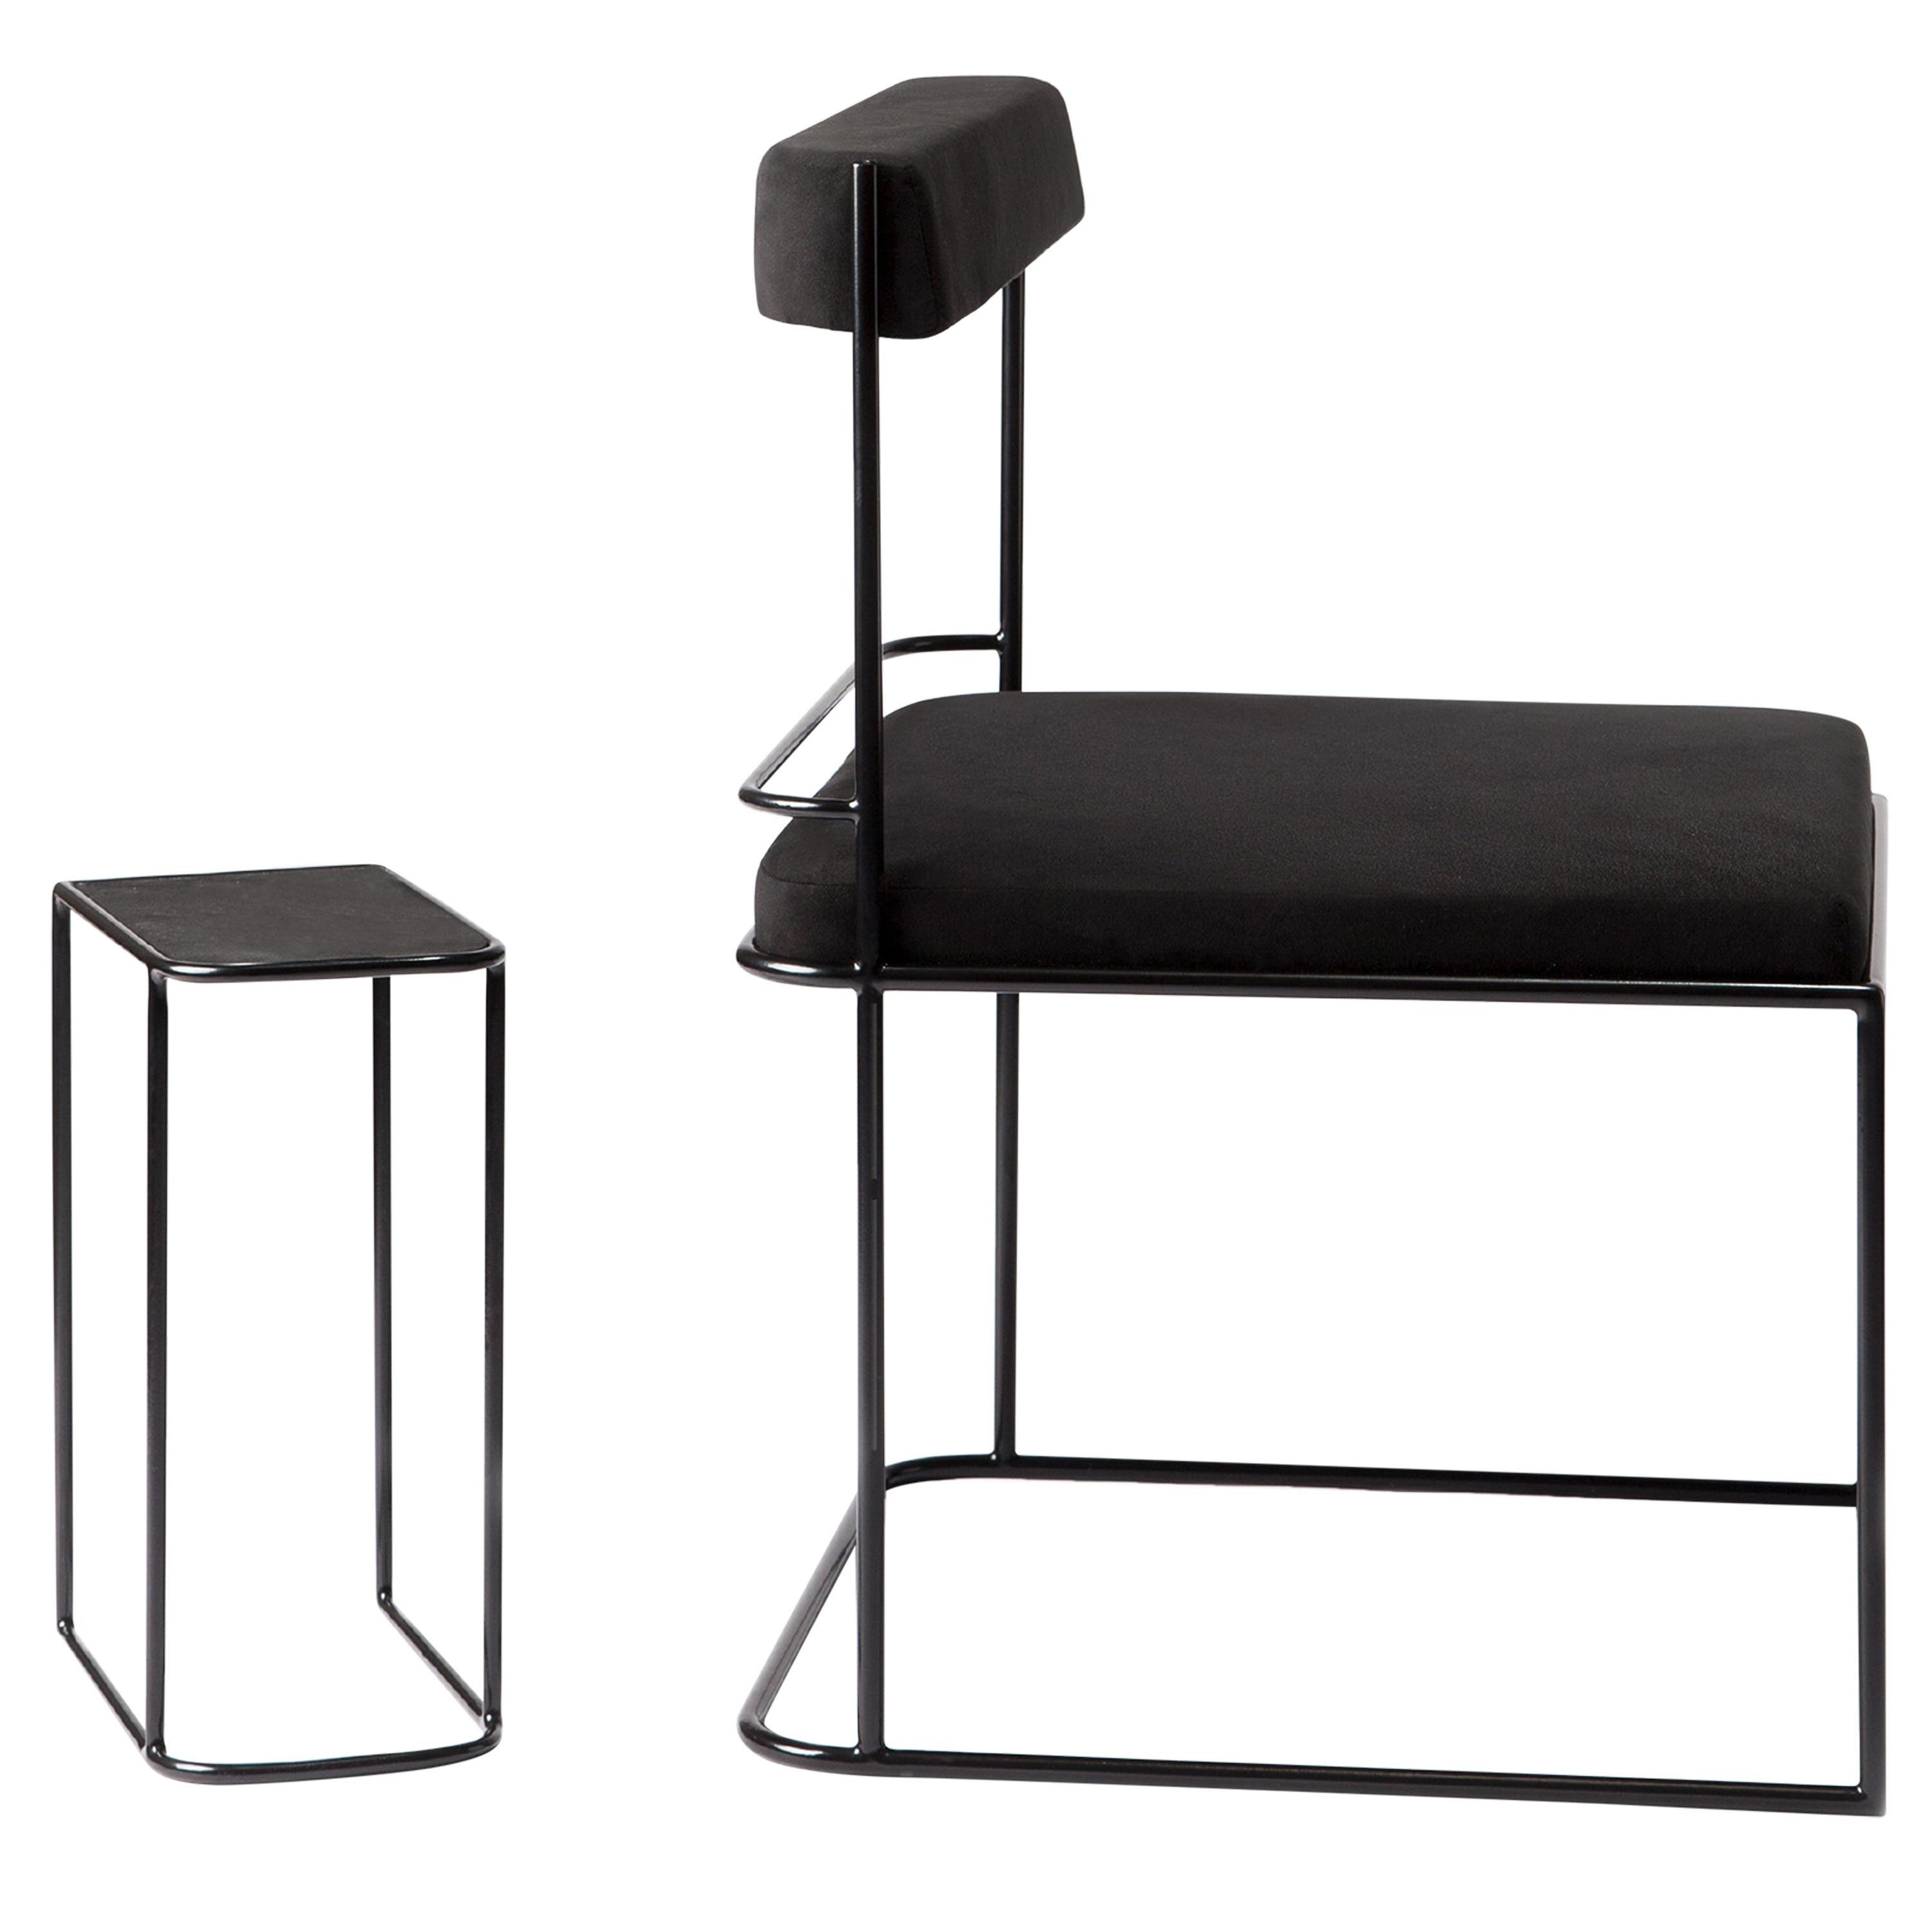 Cadre et ensemble de salon d'appoint structuré en métal noir, de style minimaliste et moderne